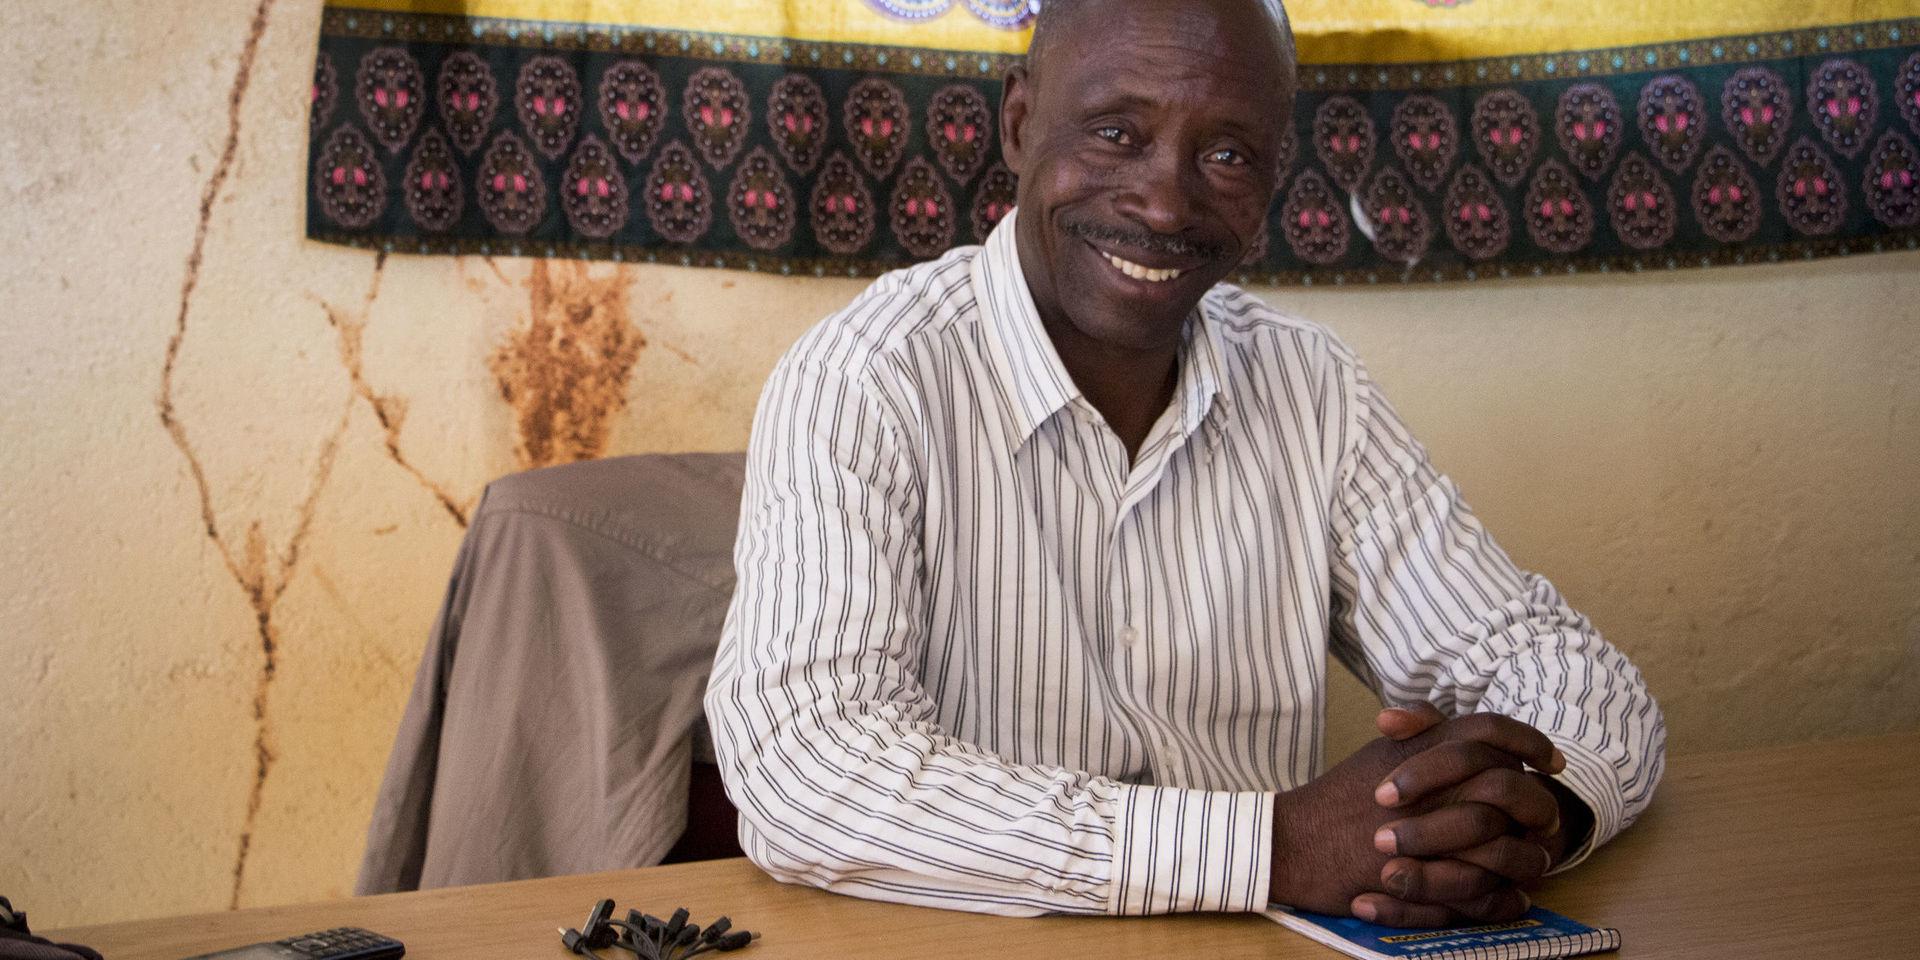 Lawrence Mwanangombe är samordnare för den arbetsgrupp som lokalbefolkningen i Kalumbila skapat för att driva sina krav gentemot gruvan. ”Det verkar som att staten stödjer investeraren mycket mer än det lokala samhällen och vi är skyfflade i händerna på företaget”, säger han.